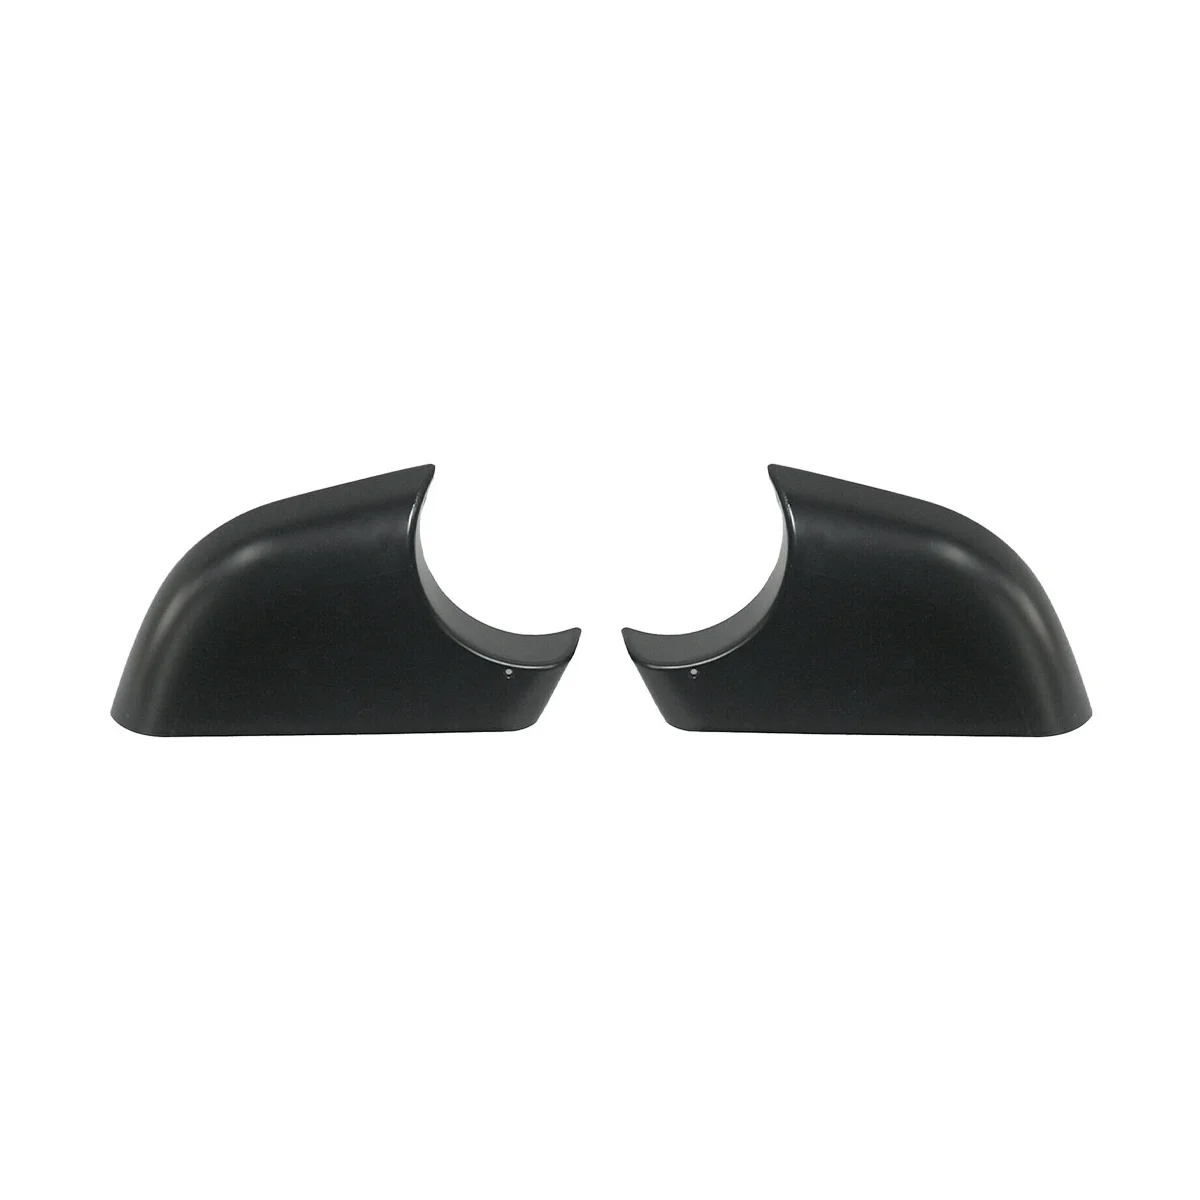 

Черная задняя крышка для зеркала заднего вида, базовая Крышка для зеркала заднего вида, базовая Крышка для Tesla Model 3, автомобильные аксессуары 2287,3006